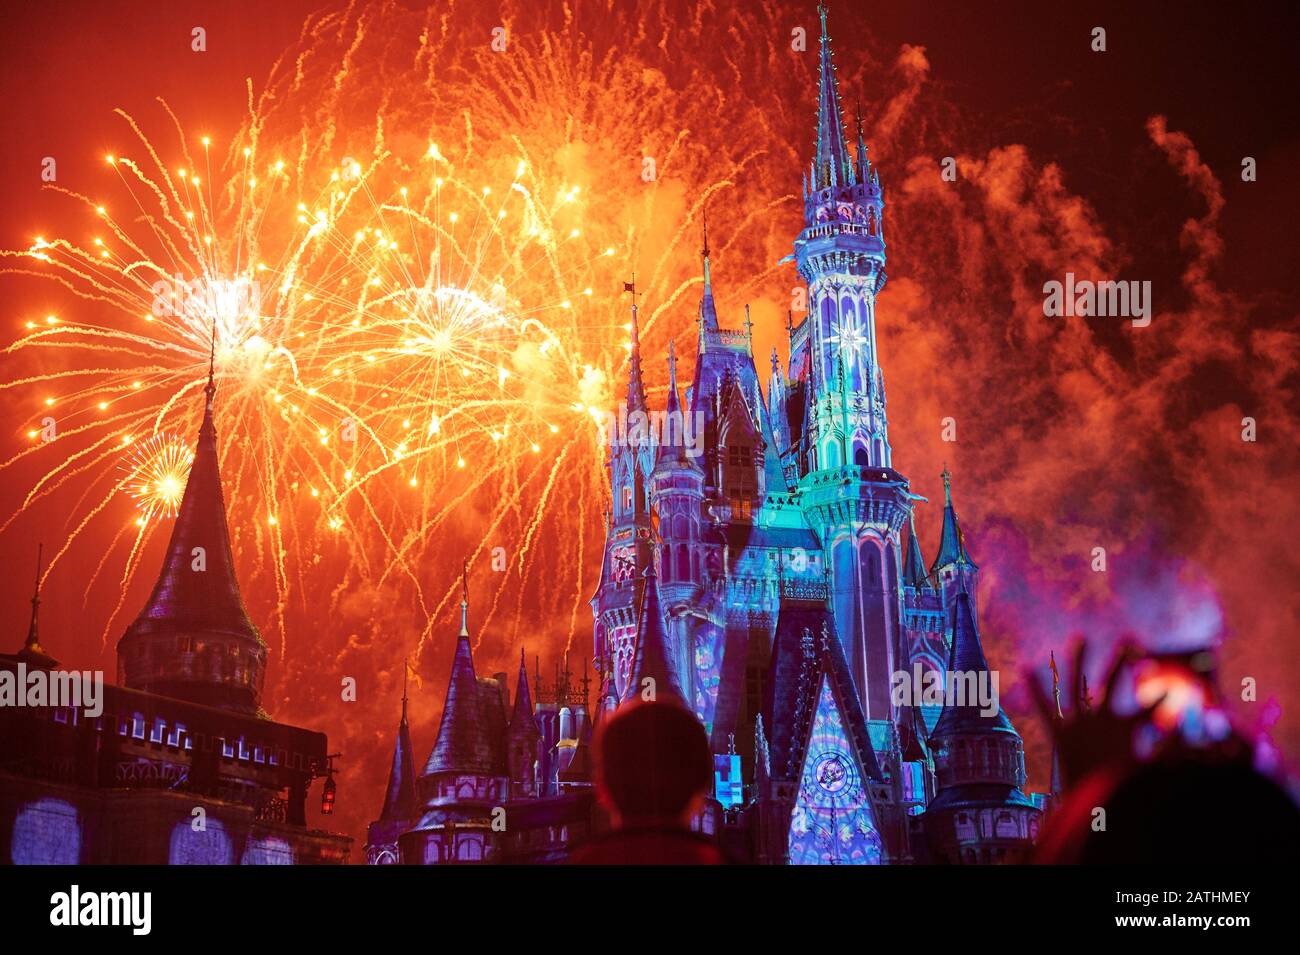 Orlando, États-Unis - 19 janvier 2020: Les gens prennent des photos de feu dans le château magique de disney Banque D'Images